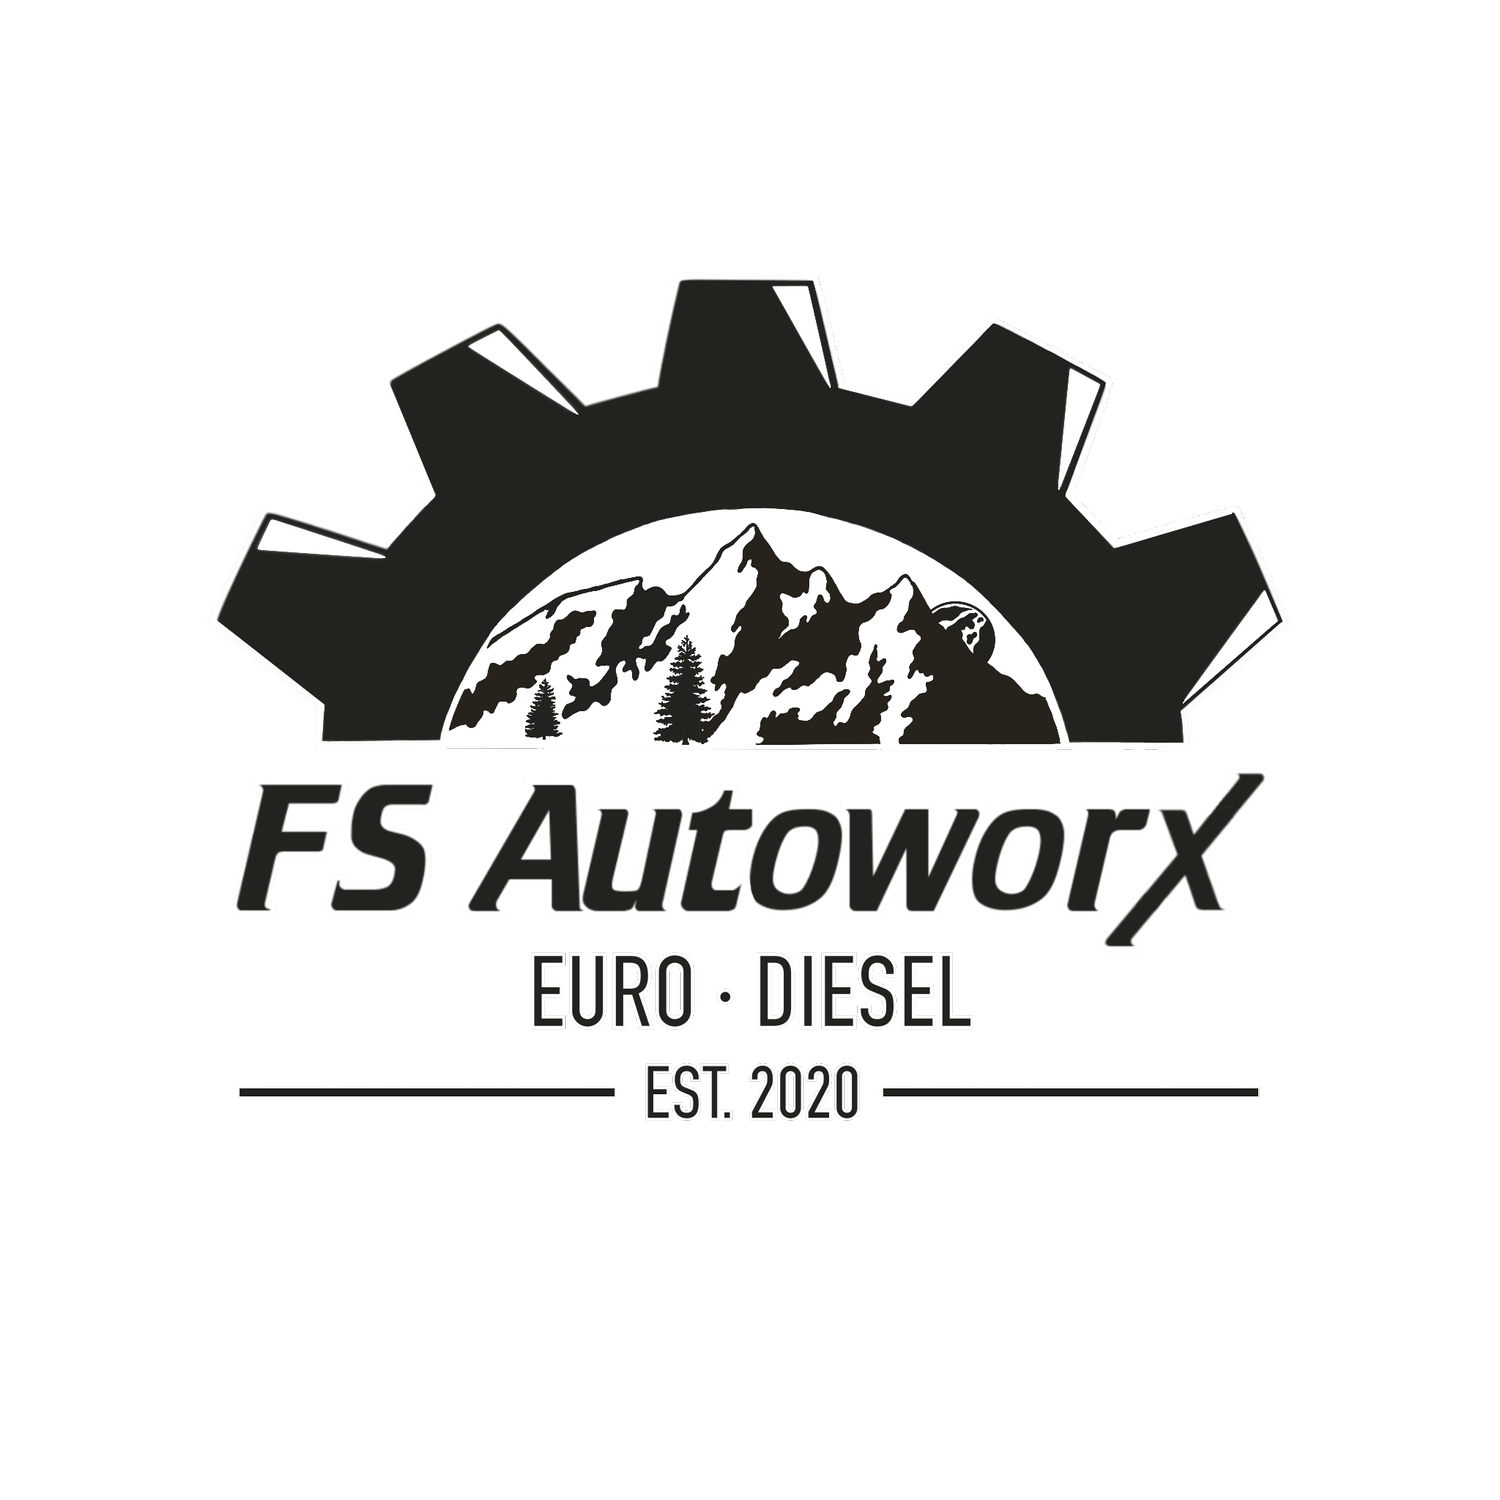 FS Autoworx